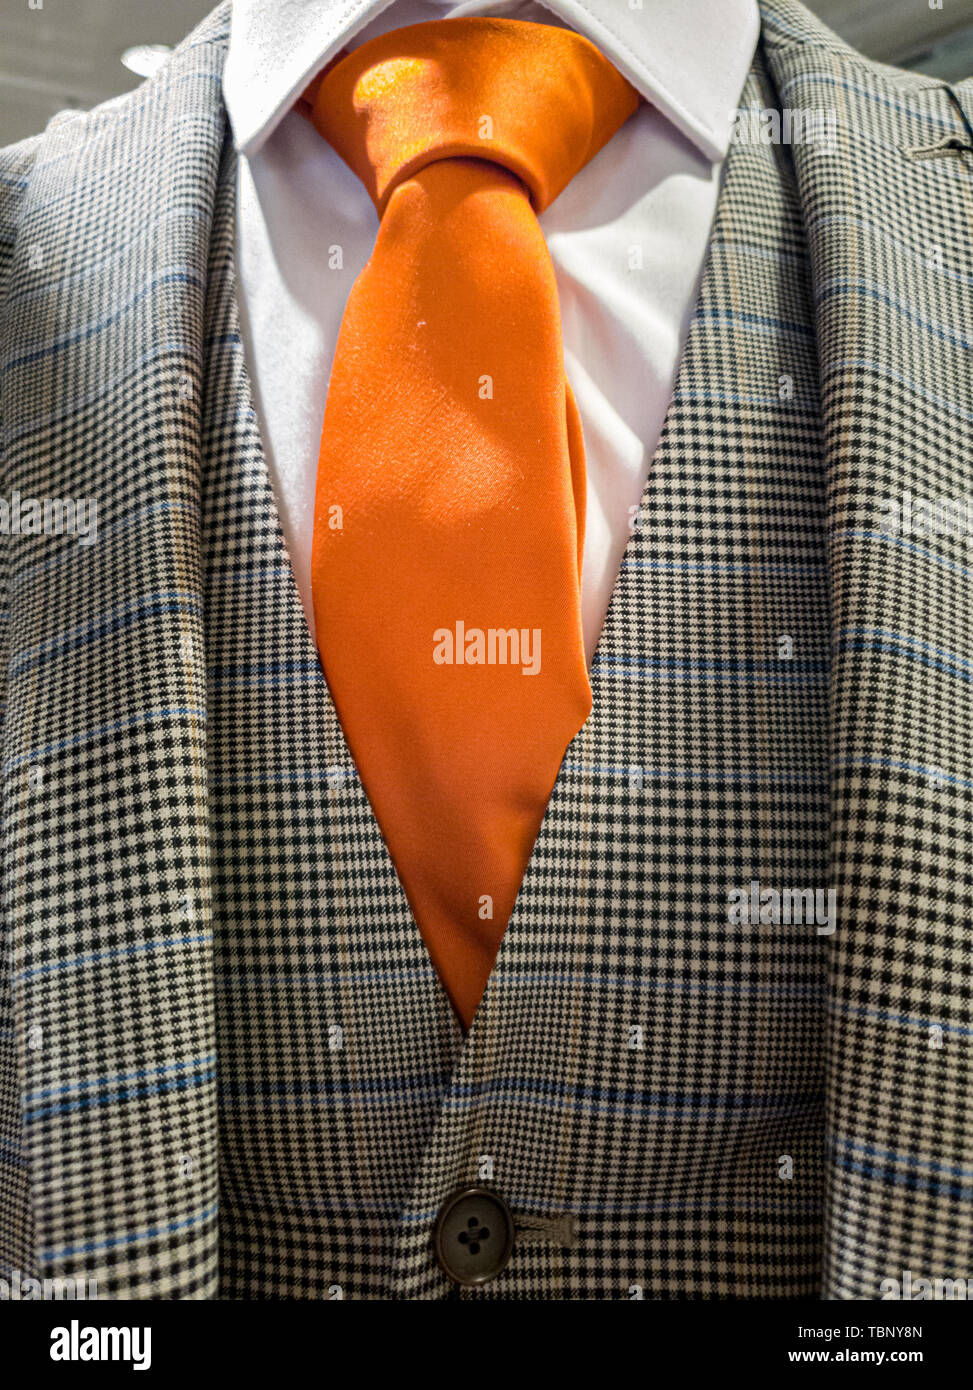 Neueste Trends in Anzug, Hemd und Krawatte Kombination - Orange tie  Stockfotografie - Alamy